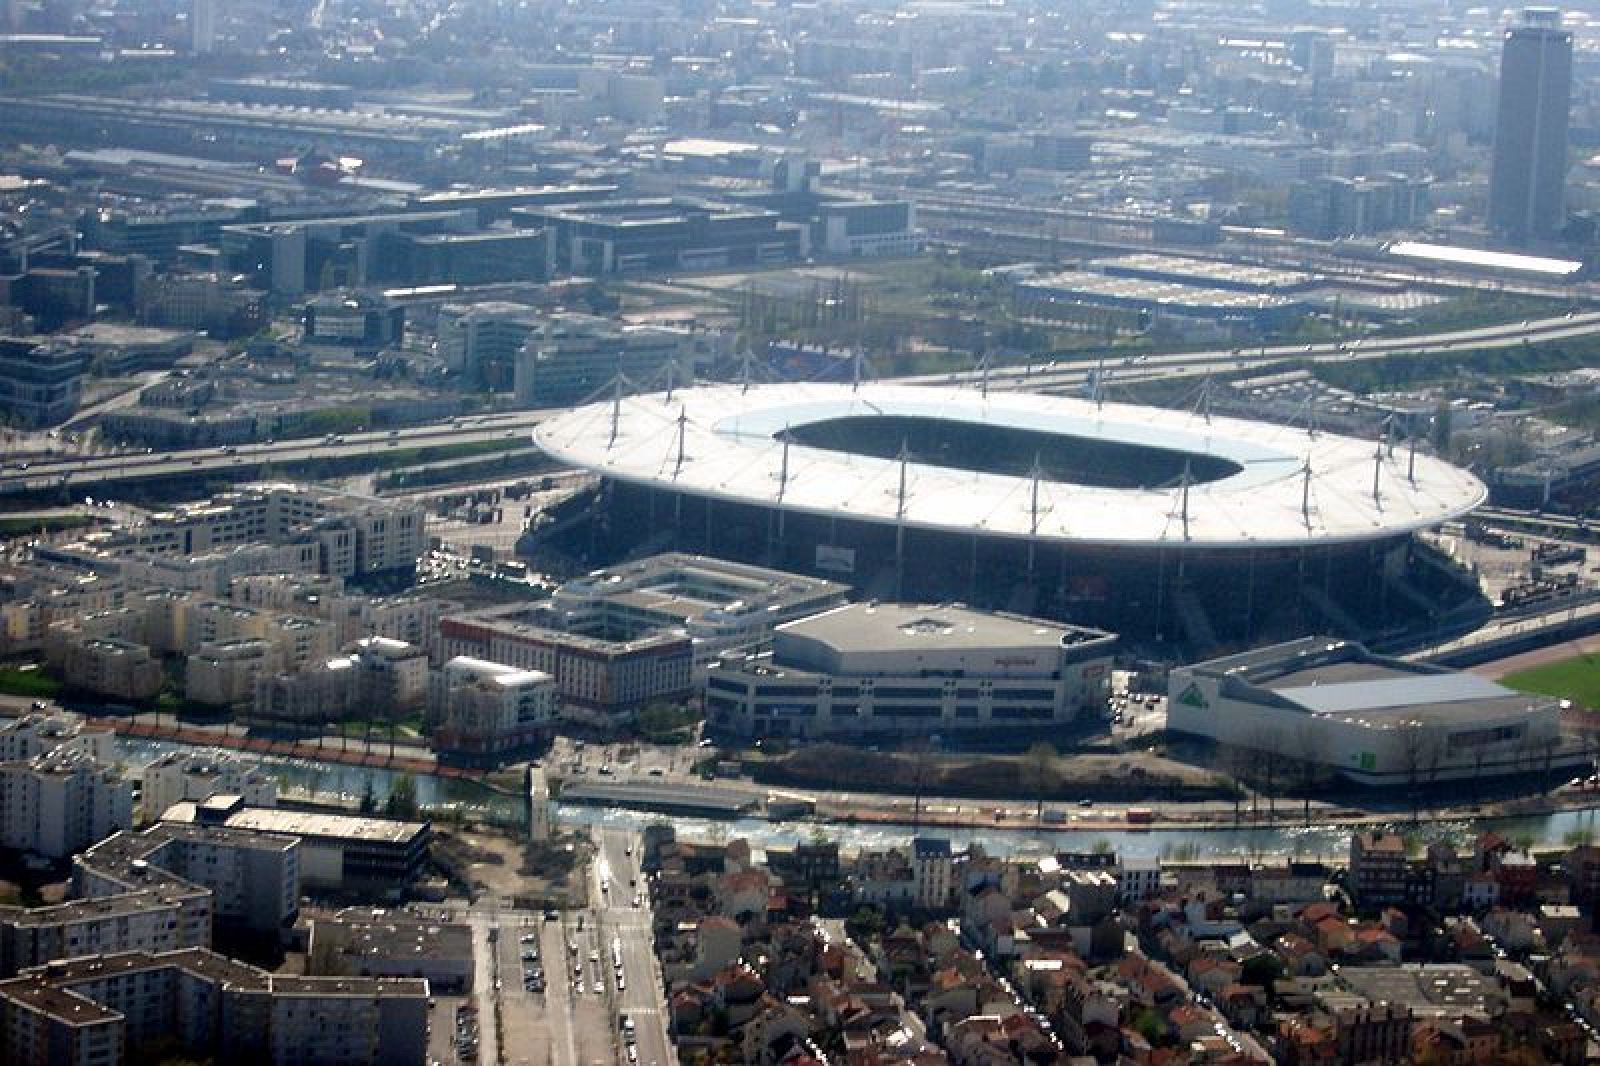 El 'Stade de France' en Saint-Denis, al norte de París, es una de las sedes para la Eurocopa de 2016.